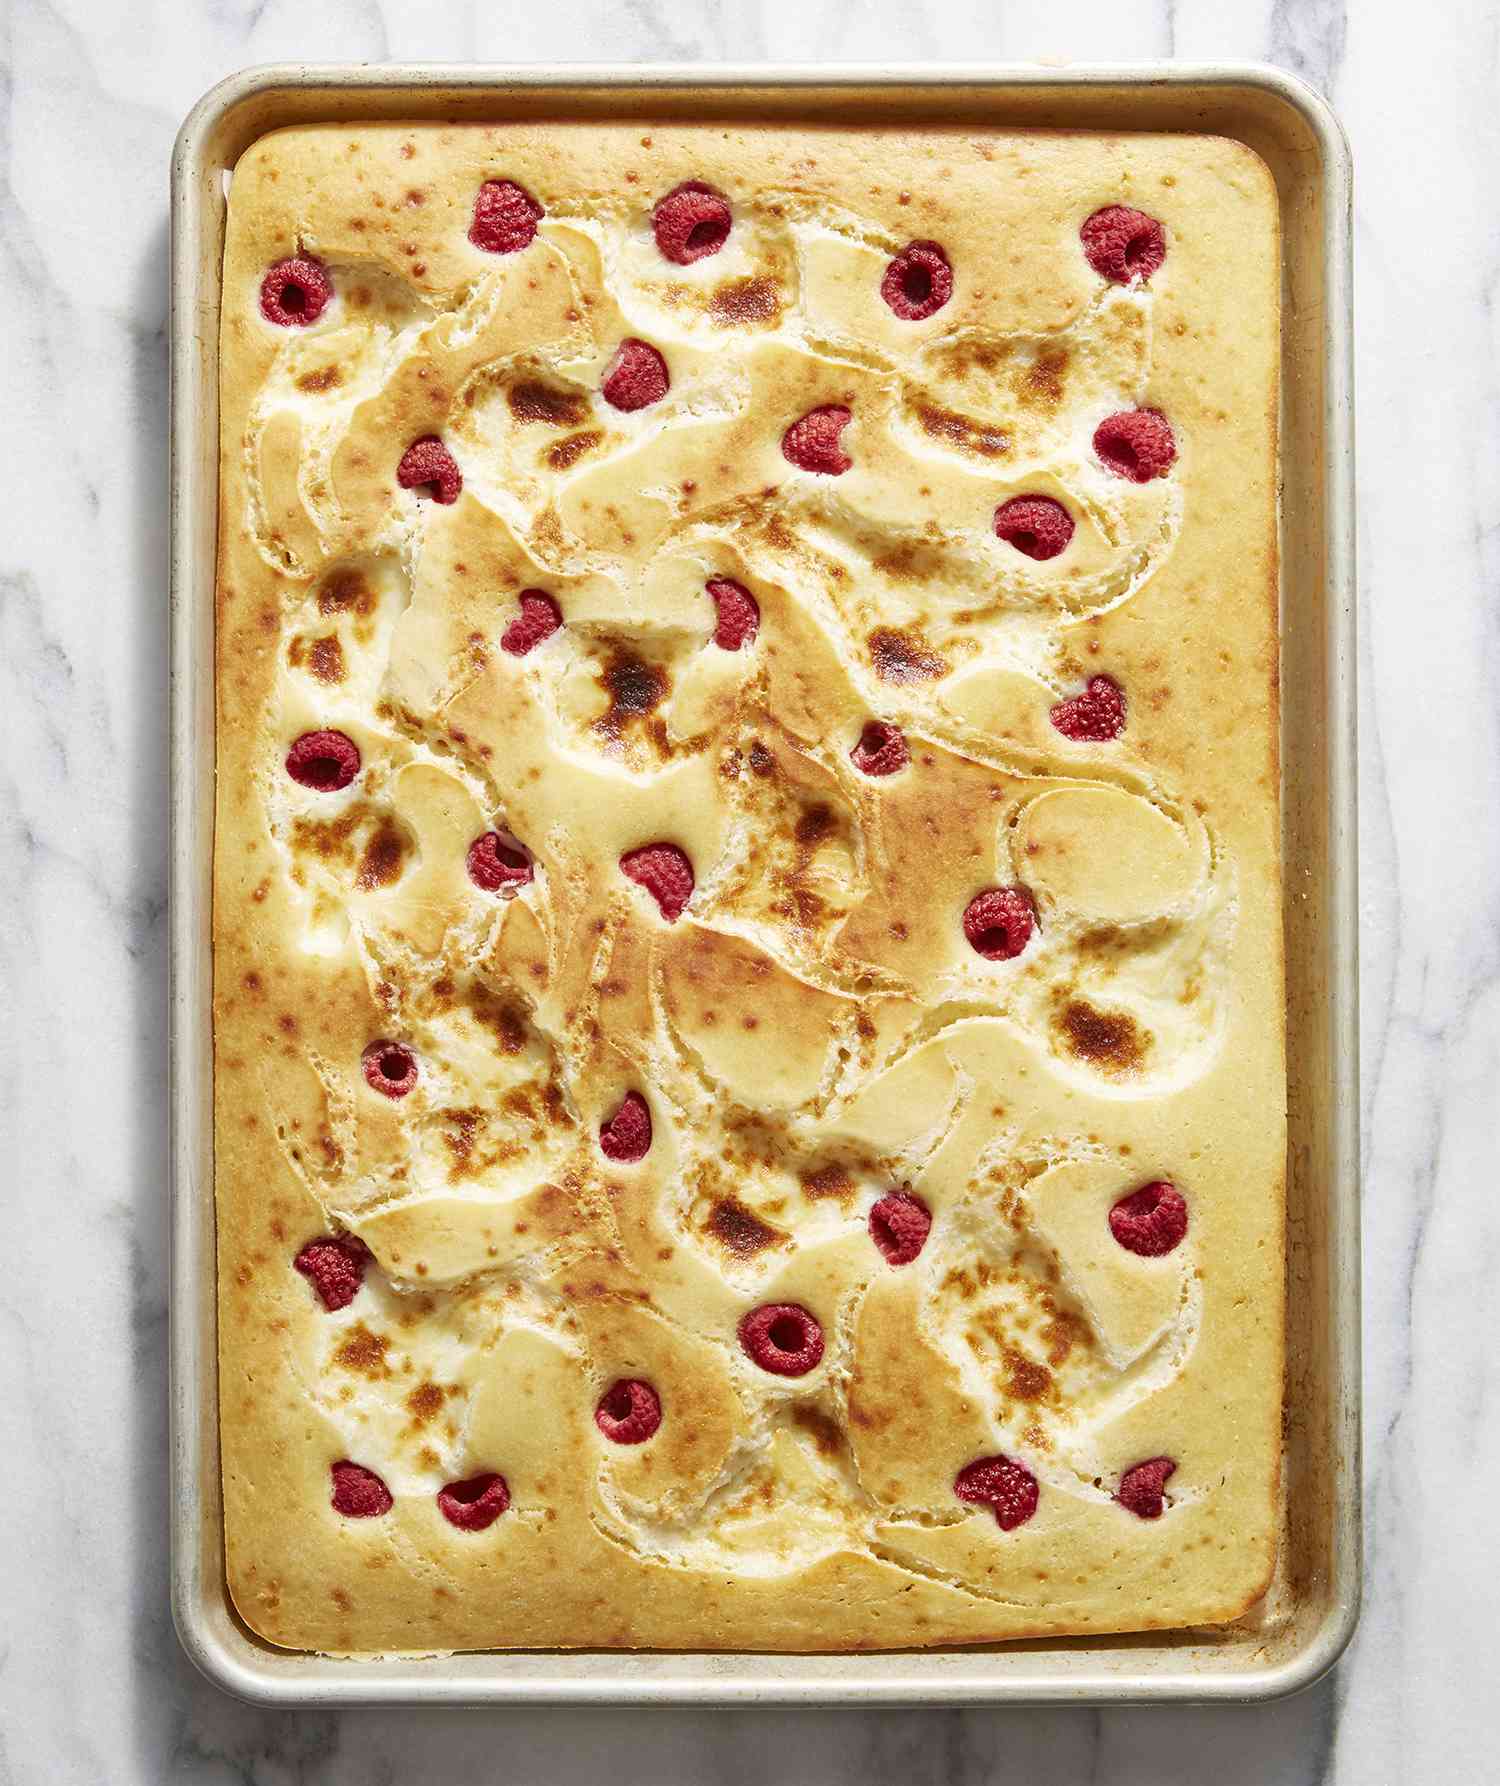 Sheet Pan Pancake With Raspberries and Cream Cheese Swirl